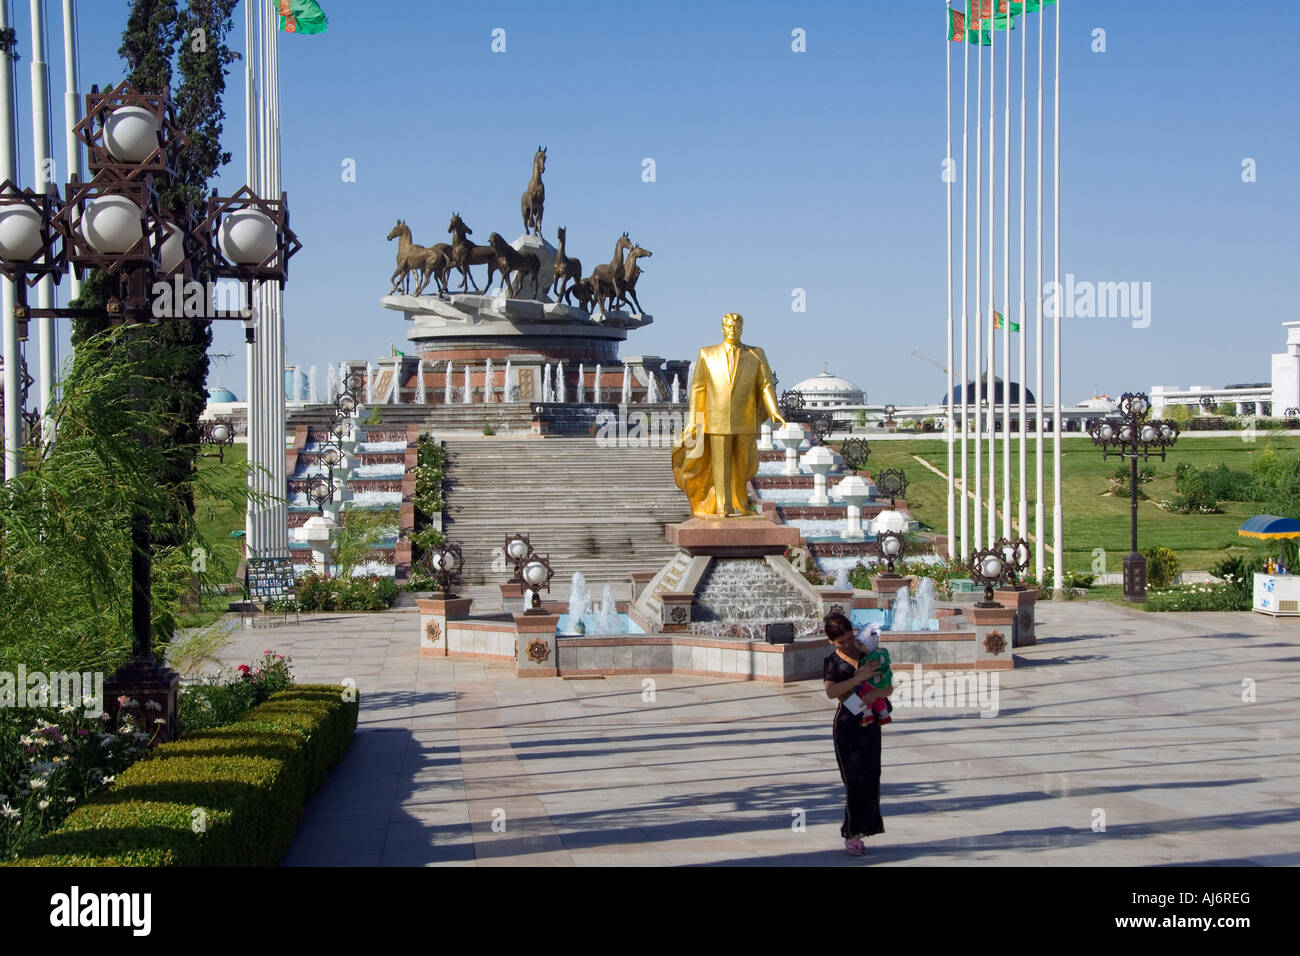 Independence monument Ashbabat Turkmenistan Stock Photo